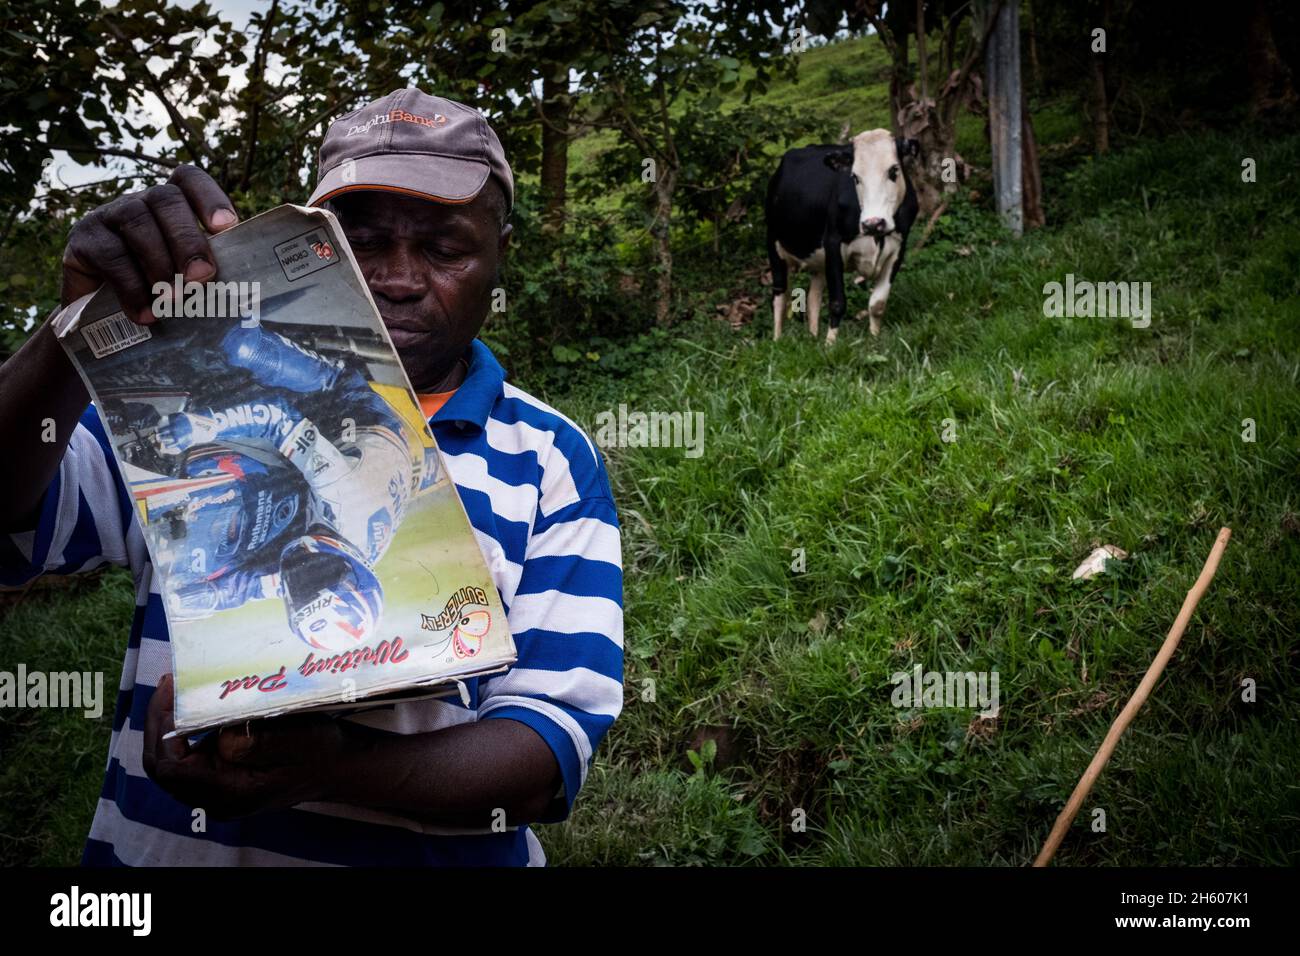 Settembre 2017. Simeo Ntawuruhunga ha ricevuto una mucca dalla Nkuringo Community Conservation and Development Foundation (NCCDF) nell'ambito del loro programma di giovenche. Egli allevia la mucca, mantiene il vitello così cominciando a costruire il suo gregge, e passa la vacca originale al prossimo in linea nel programma giovenca. Ora ha 6 mucche che che producono latte che può vendere localmente. I tori nati vengono venduti per la carne. Nkuringo, Uganda. Foto Stock